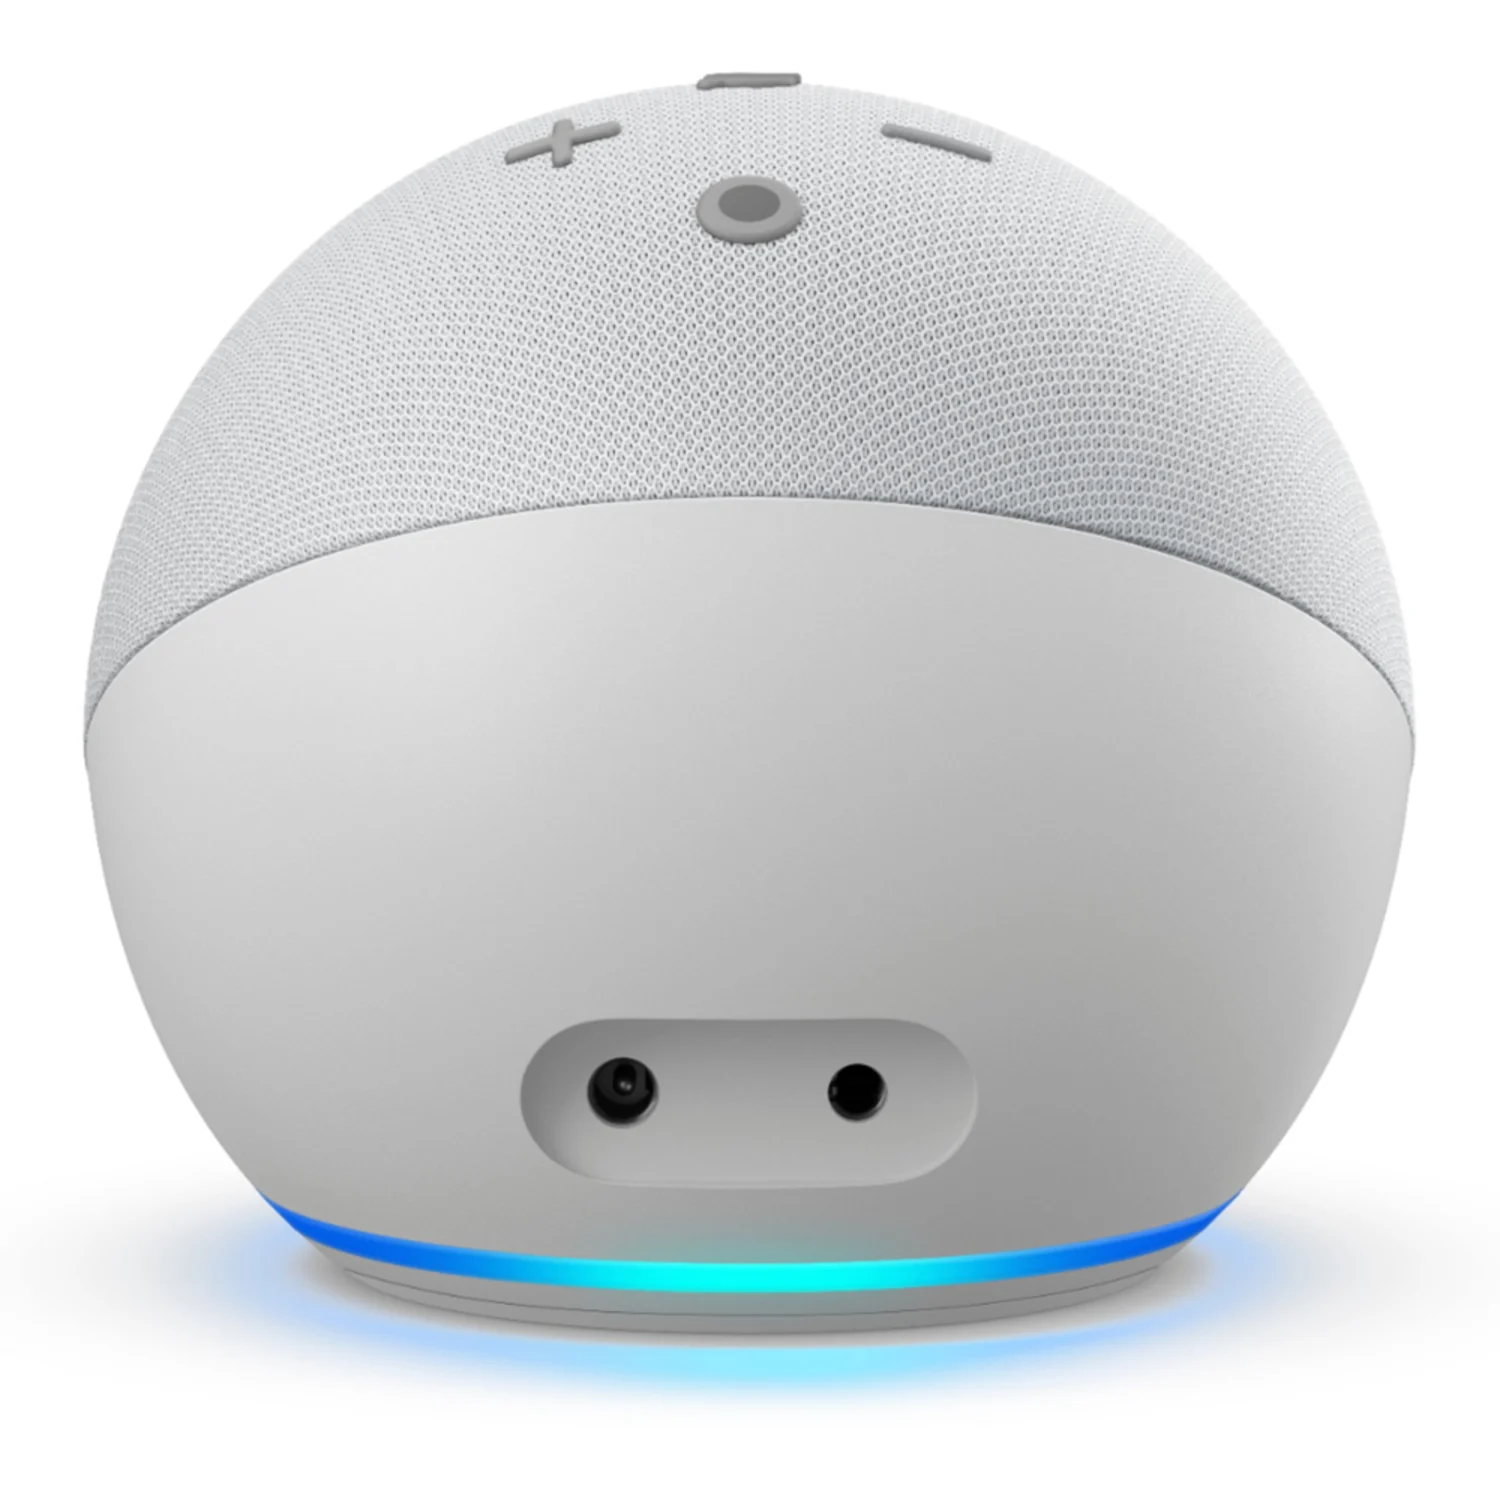 Assistente virtual Amazon Echo Dot 4 geração - Branco (B084J4KNDS)	